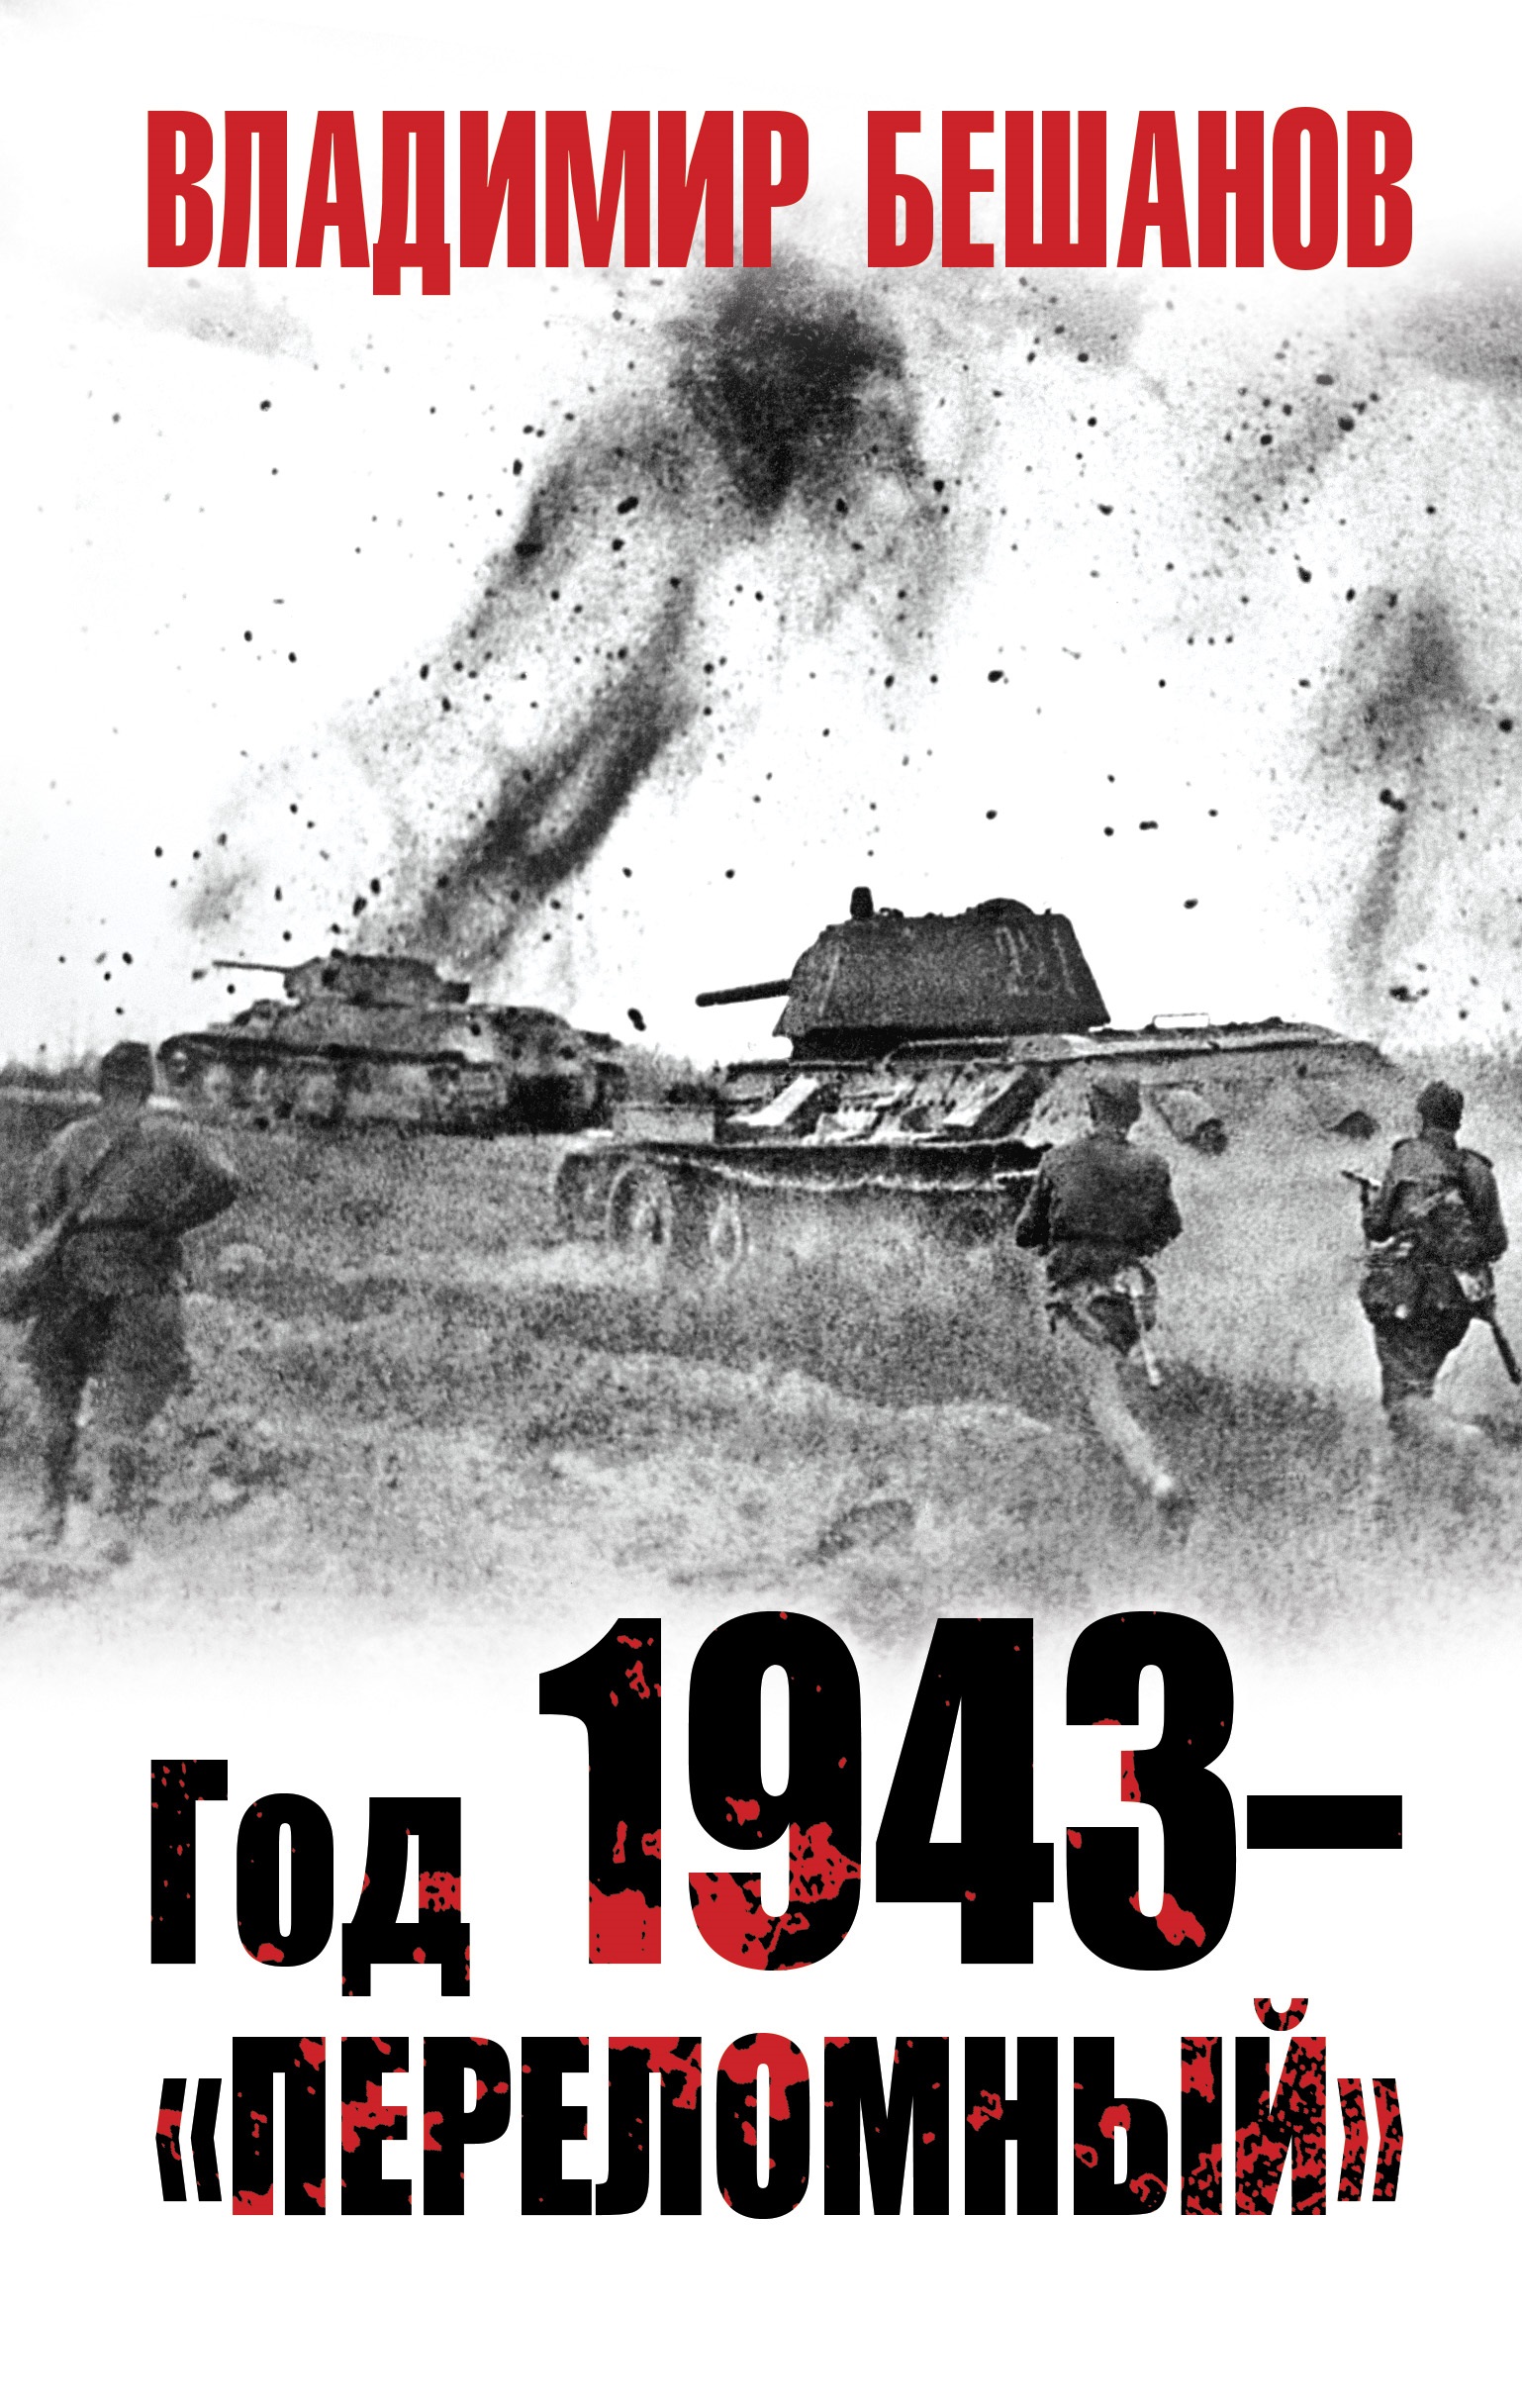 Год 1943 – «переломный» бешанов владимир васильевич год 1943 переломный